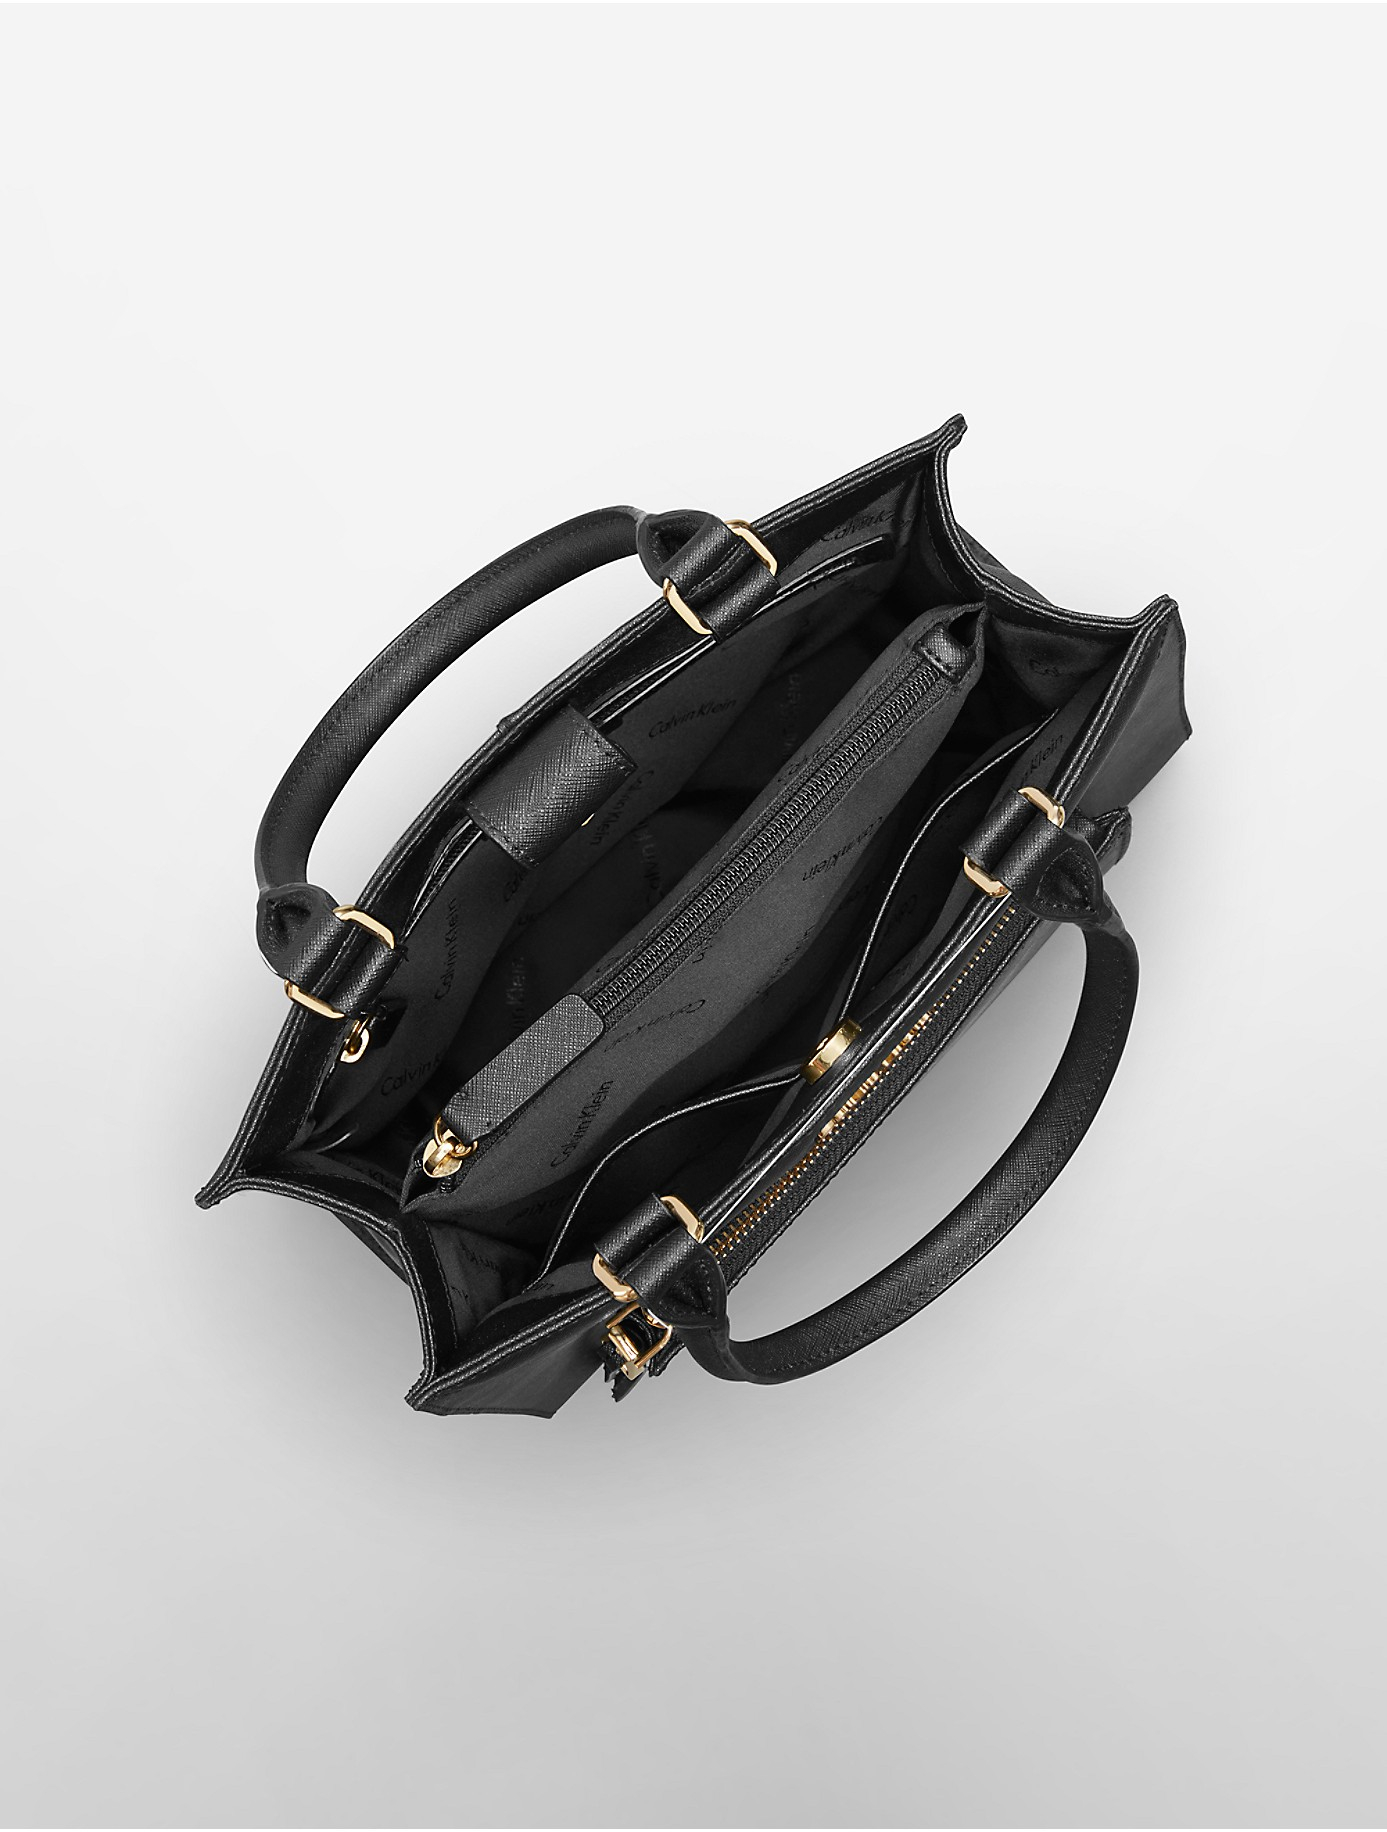 Calvin Klein Saffiano Leather Small Tote Bag in Black/Gold (Black 